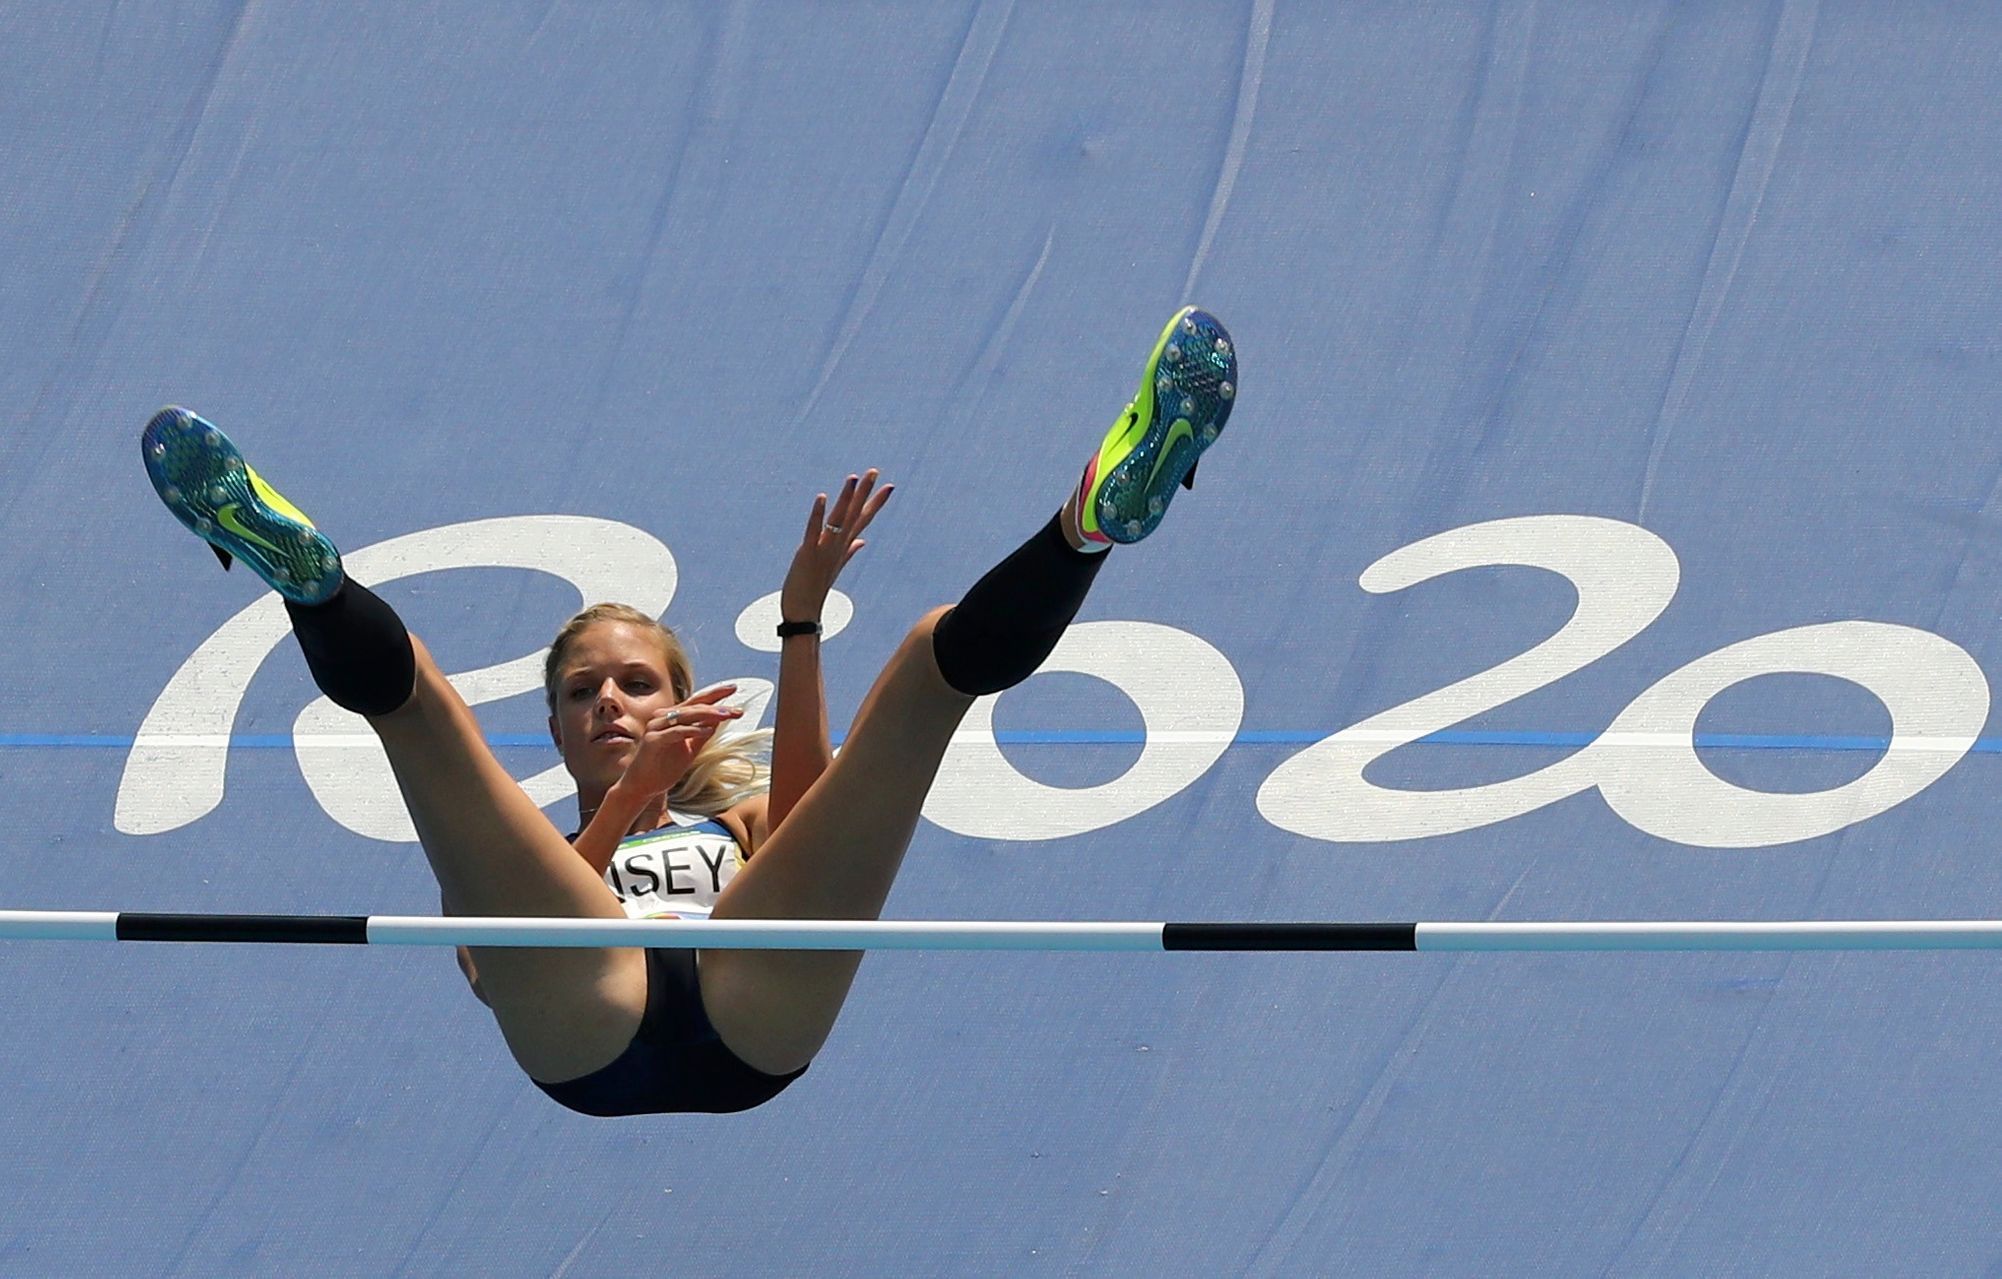 OH 2016 - atletika, skok do výšky Ž: Erika Kinseyová (SWE)